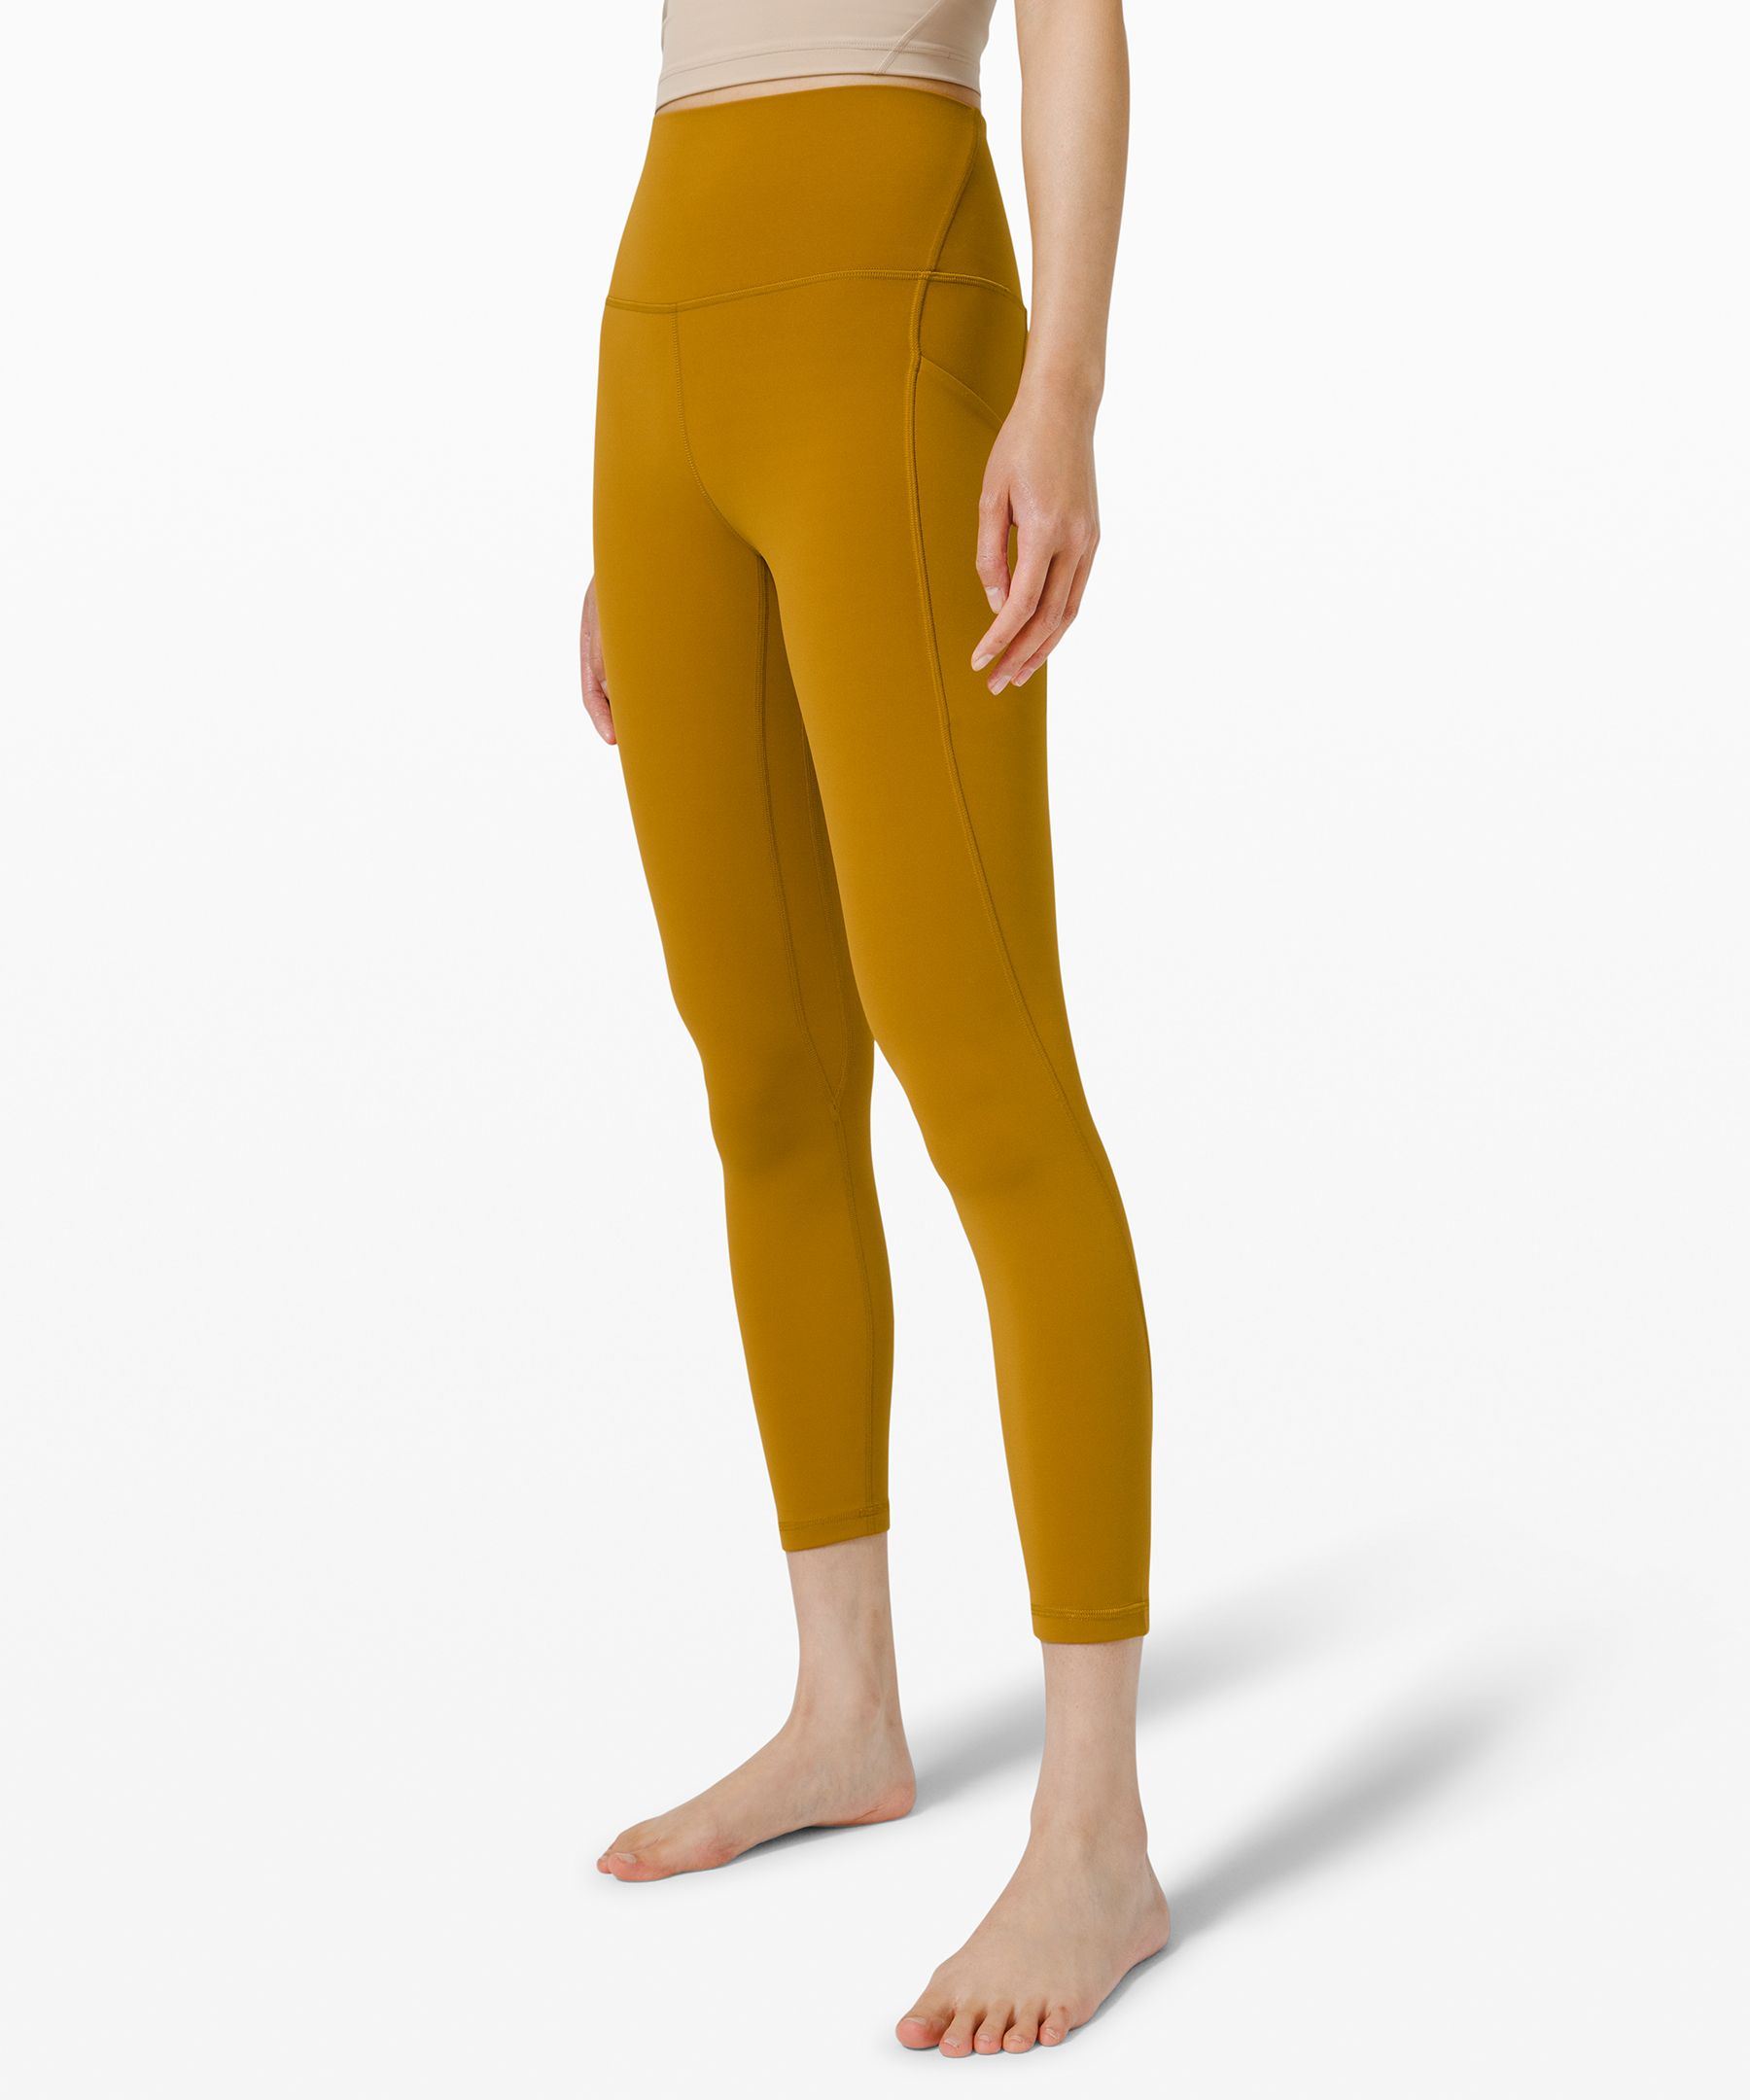 lululemon Align™ High-Rise Pant with Pockets 25" | Women's Leggings